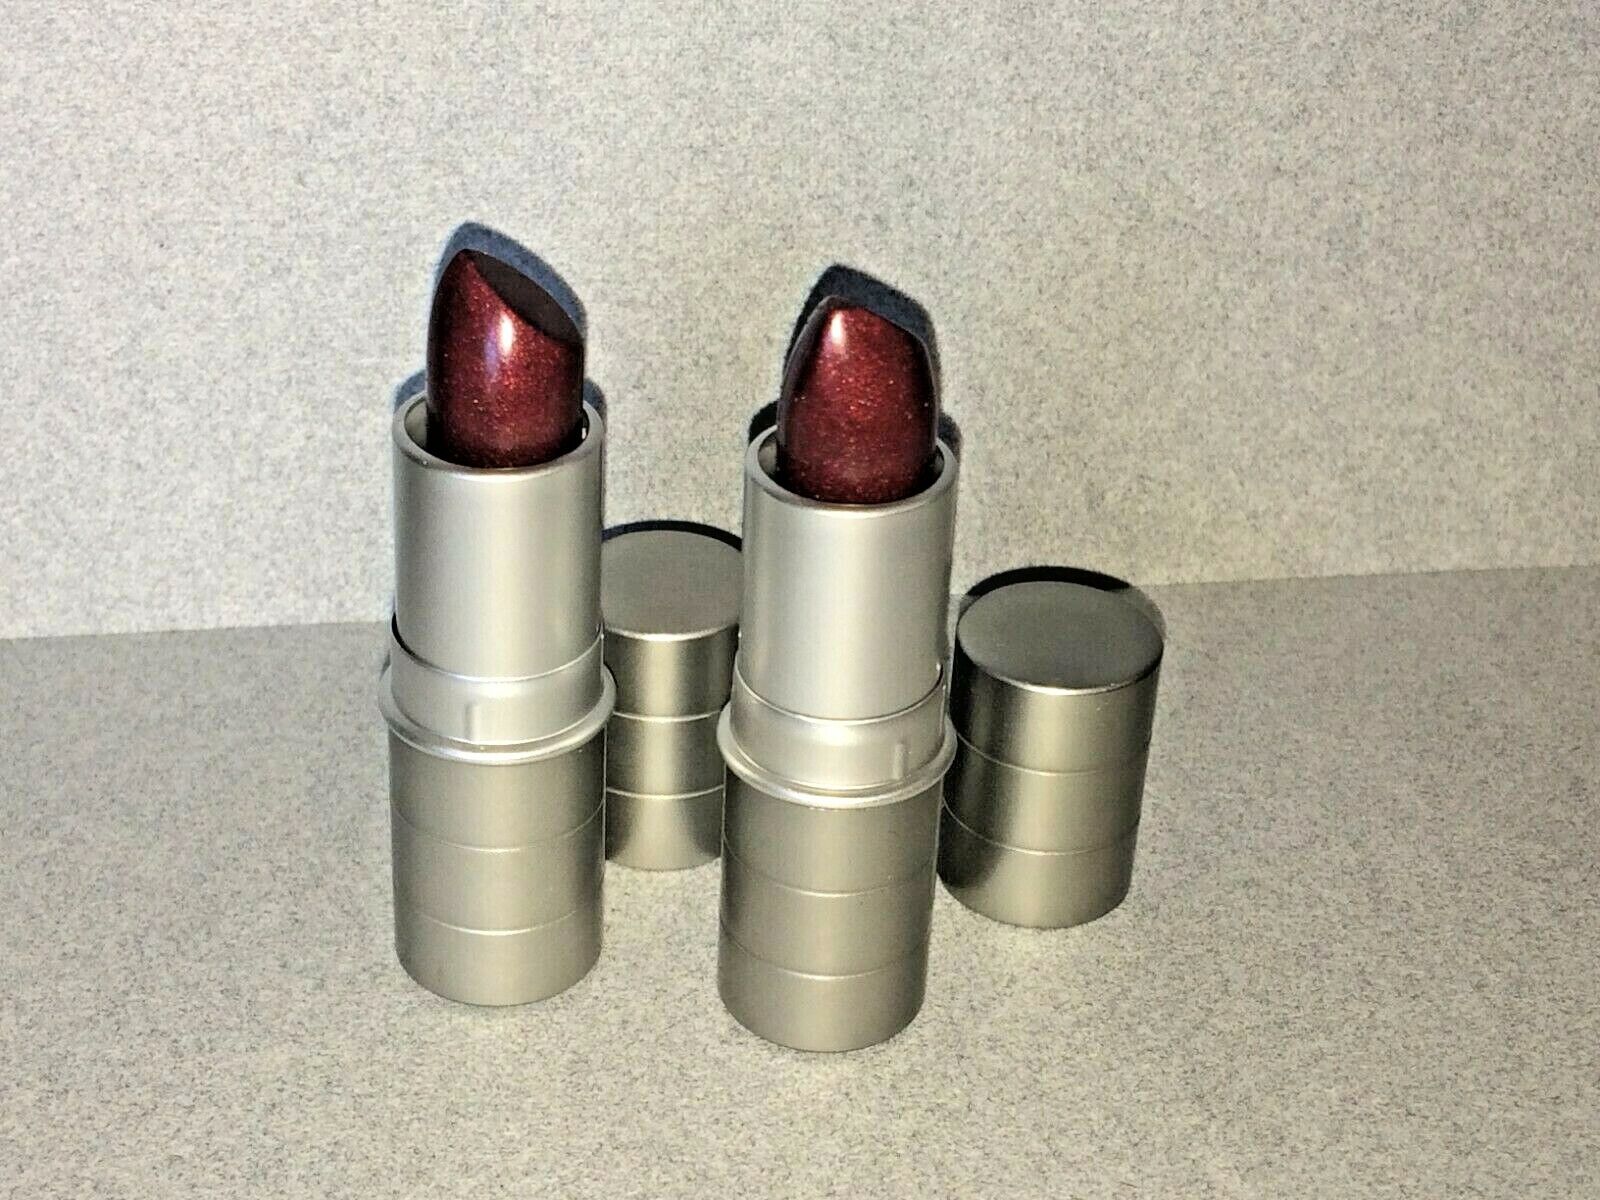 2  Prescriptives Lipstick GOSSIP - Wine B/R M19  -  Full Size (HTF) Rare Prescriptives None - фотография #4